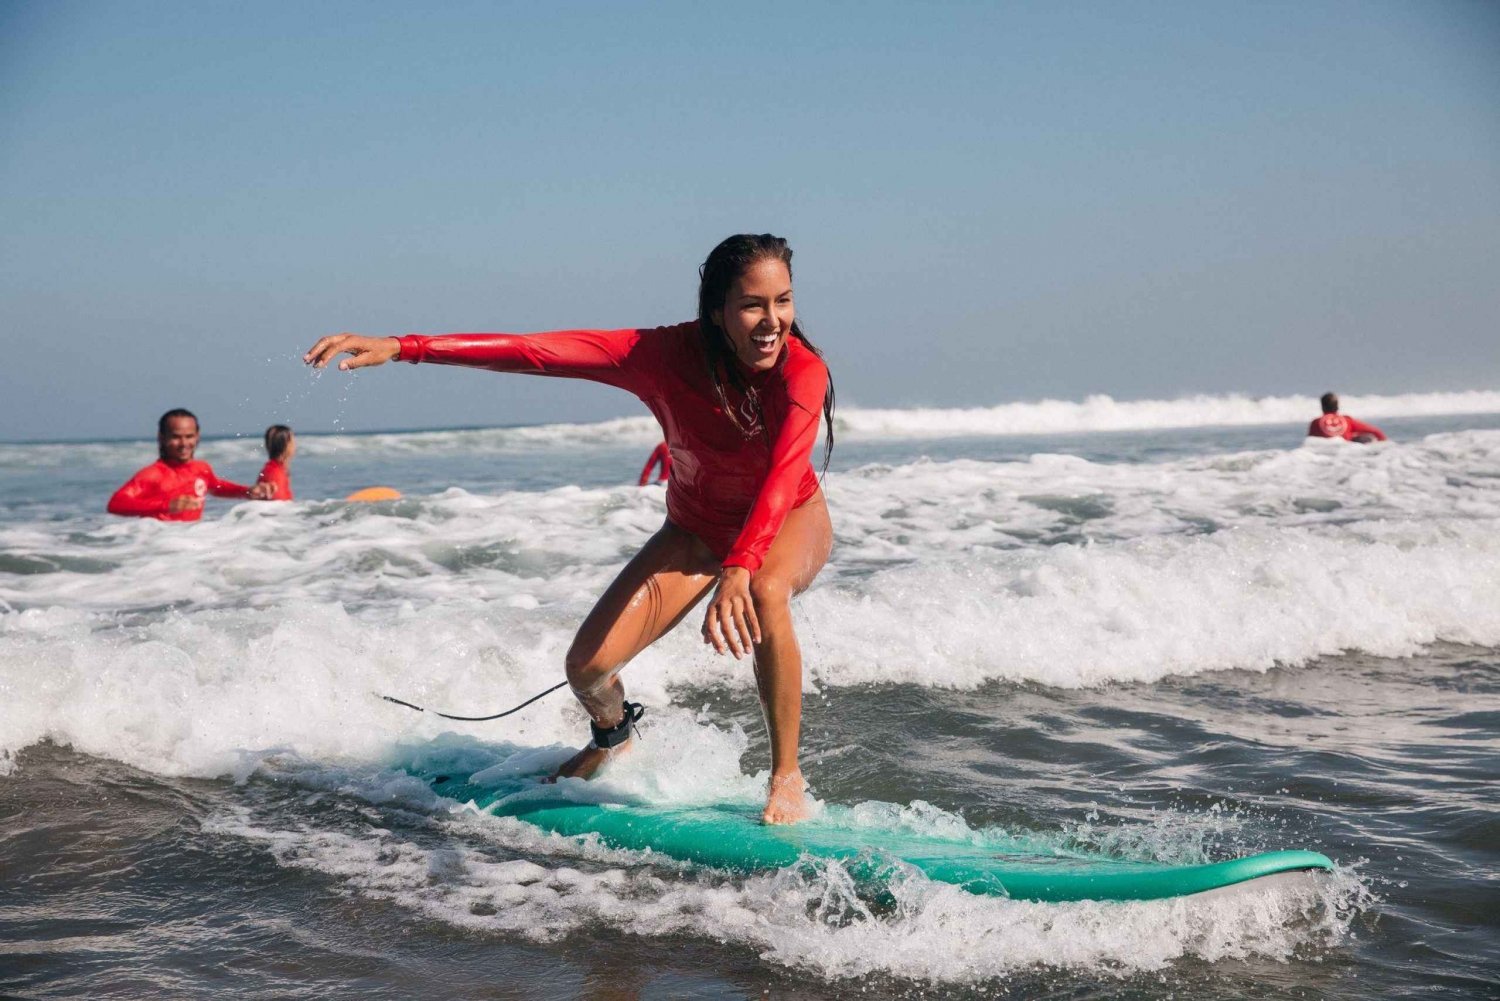 Jaco Beach: Surfen lernen in Costa Rica - Surfen für Familien